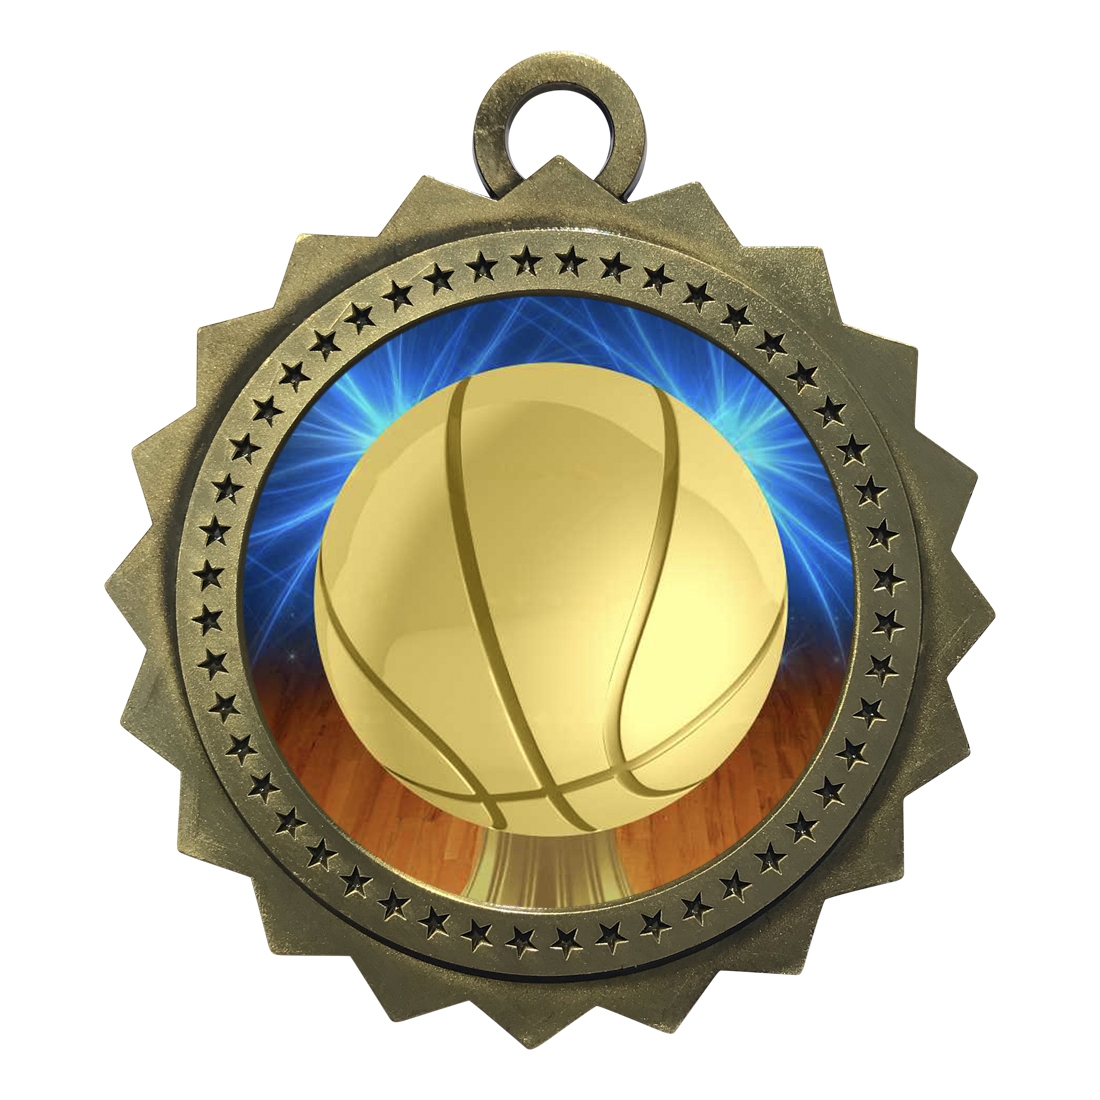 3" Basketball Medal